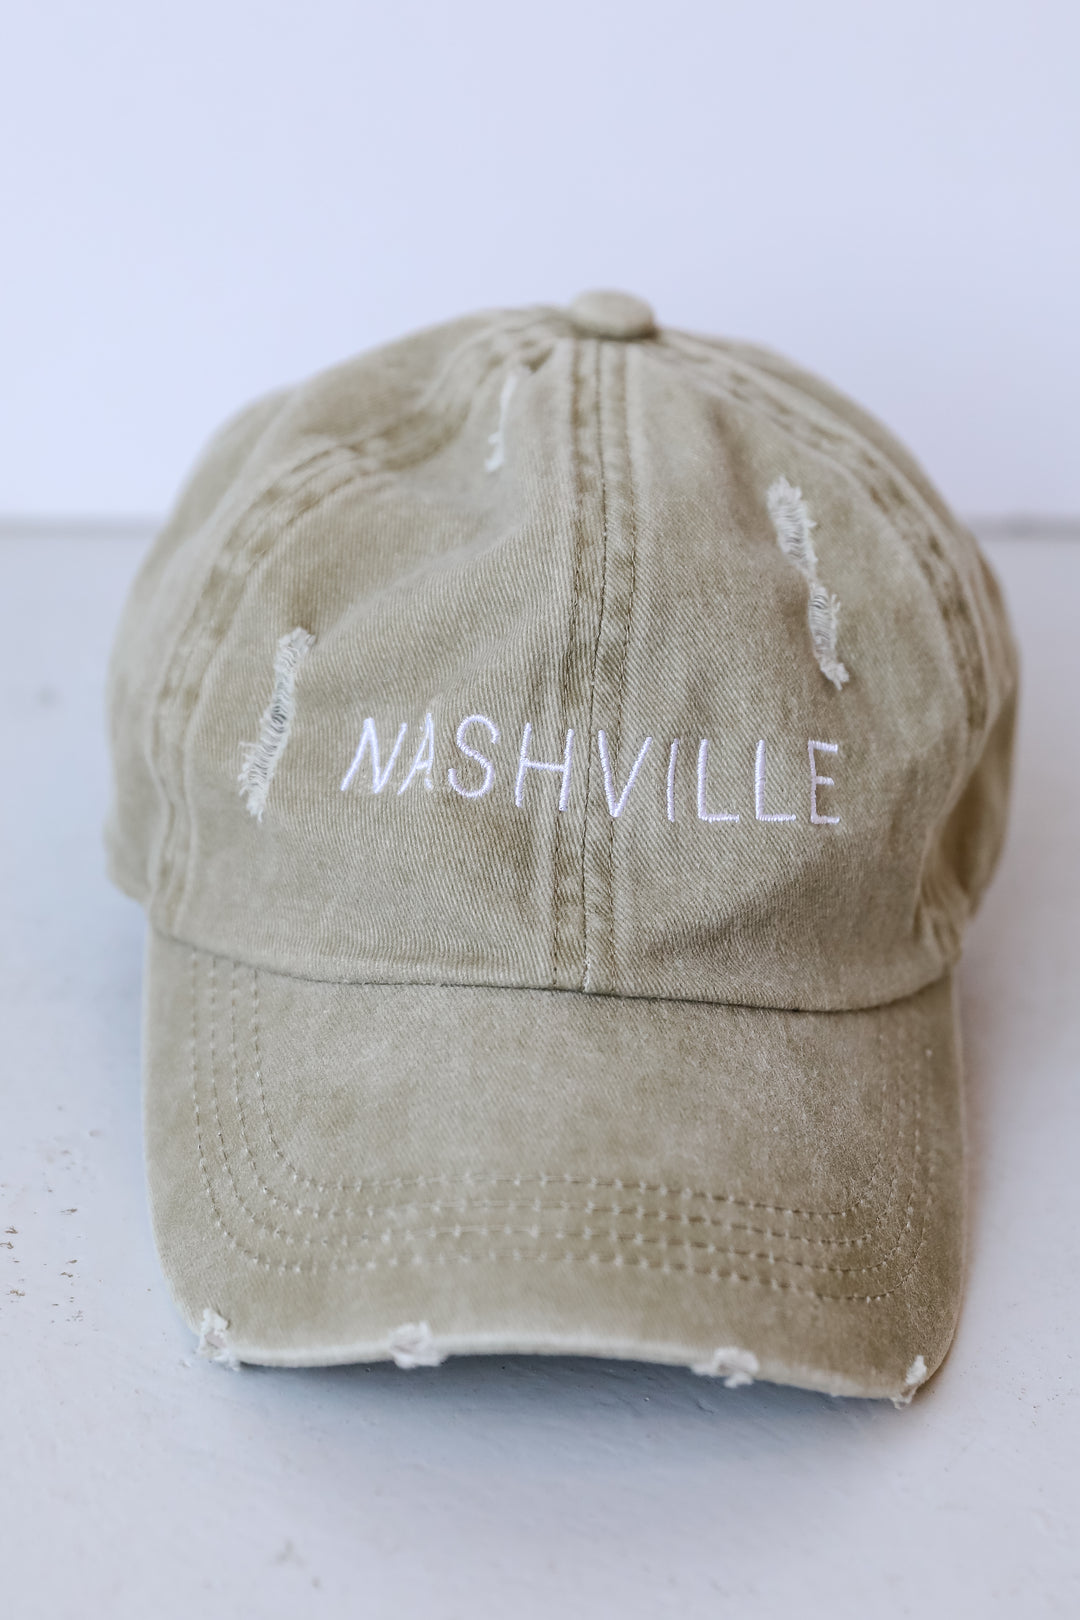 Nashville Vintage Embroidered Hat